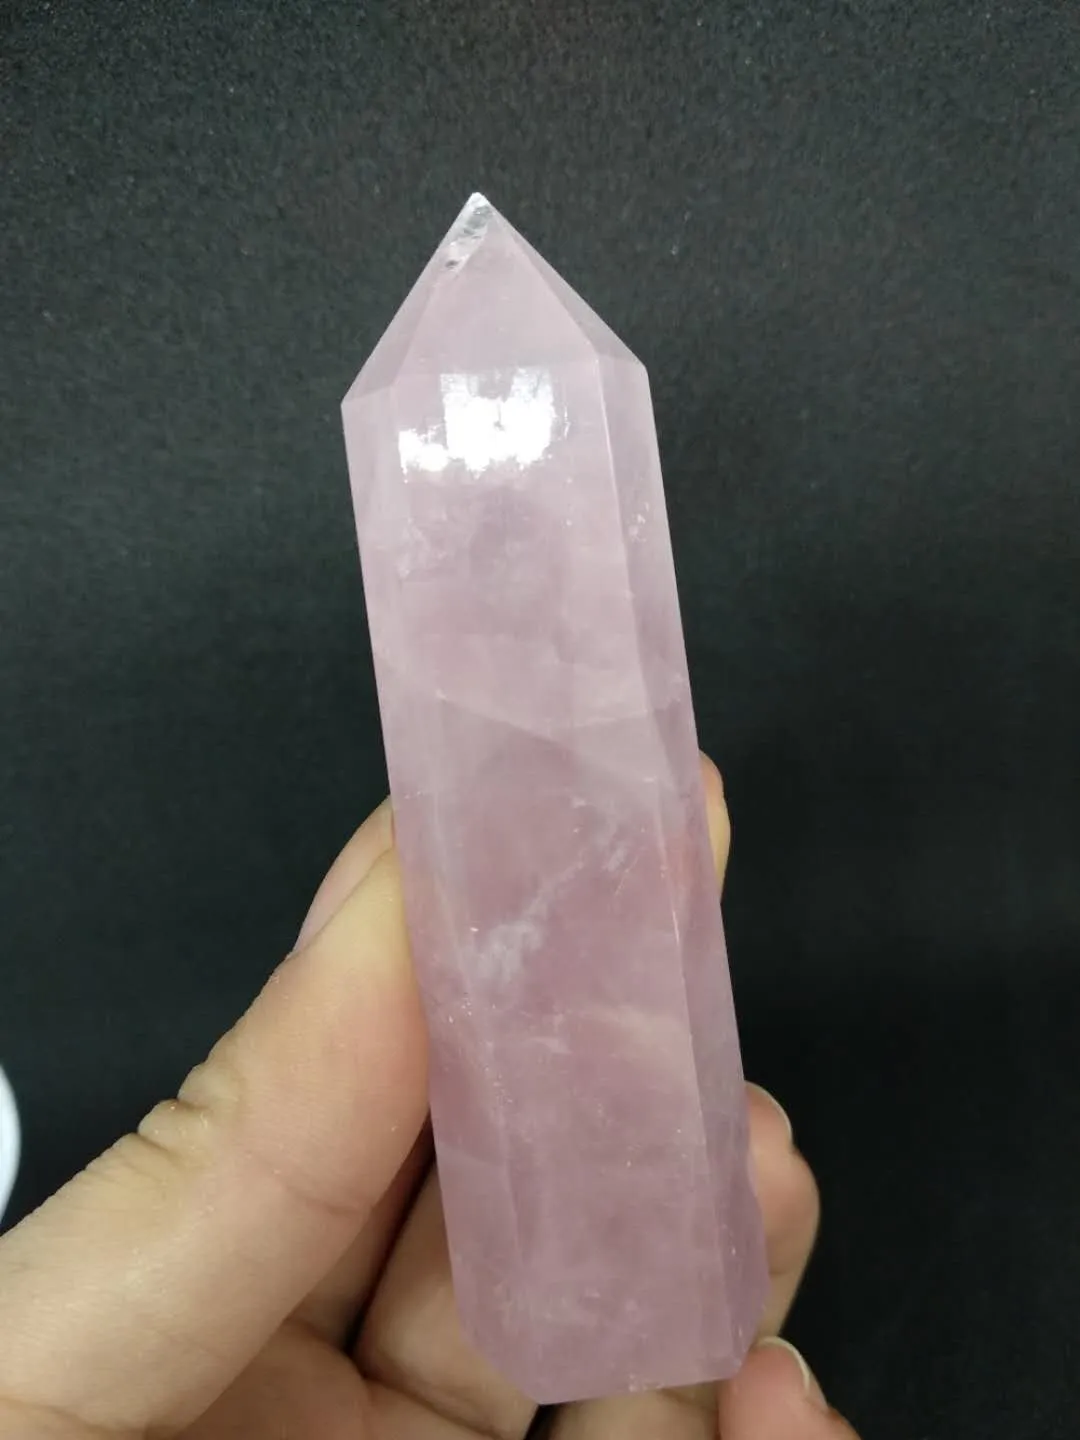 Горячая распродажа! Природные розовый кварц Кристалл палочка точки исцеления природных камней и минералов для рождественский подарок бесплатная доставка